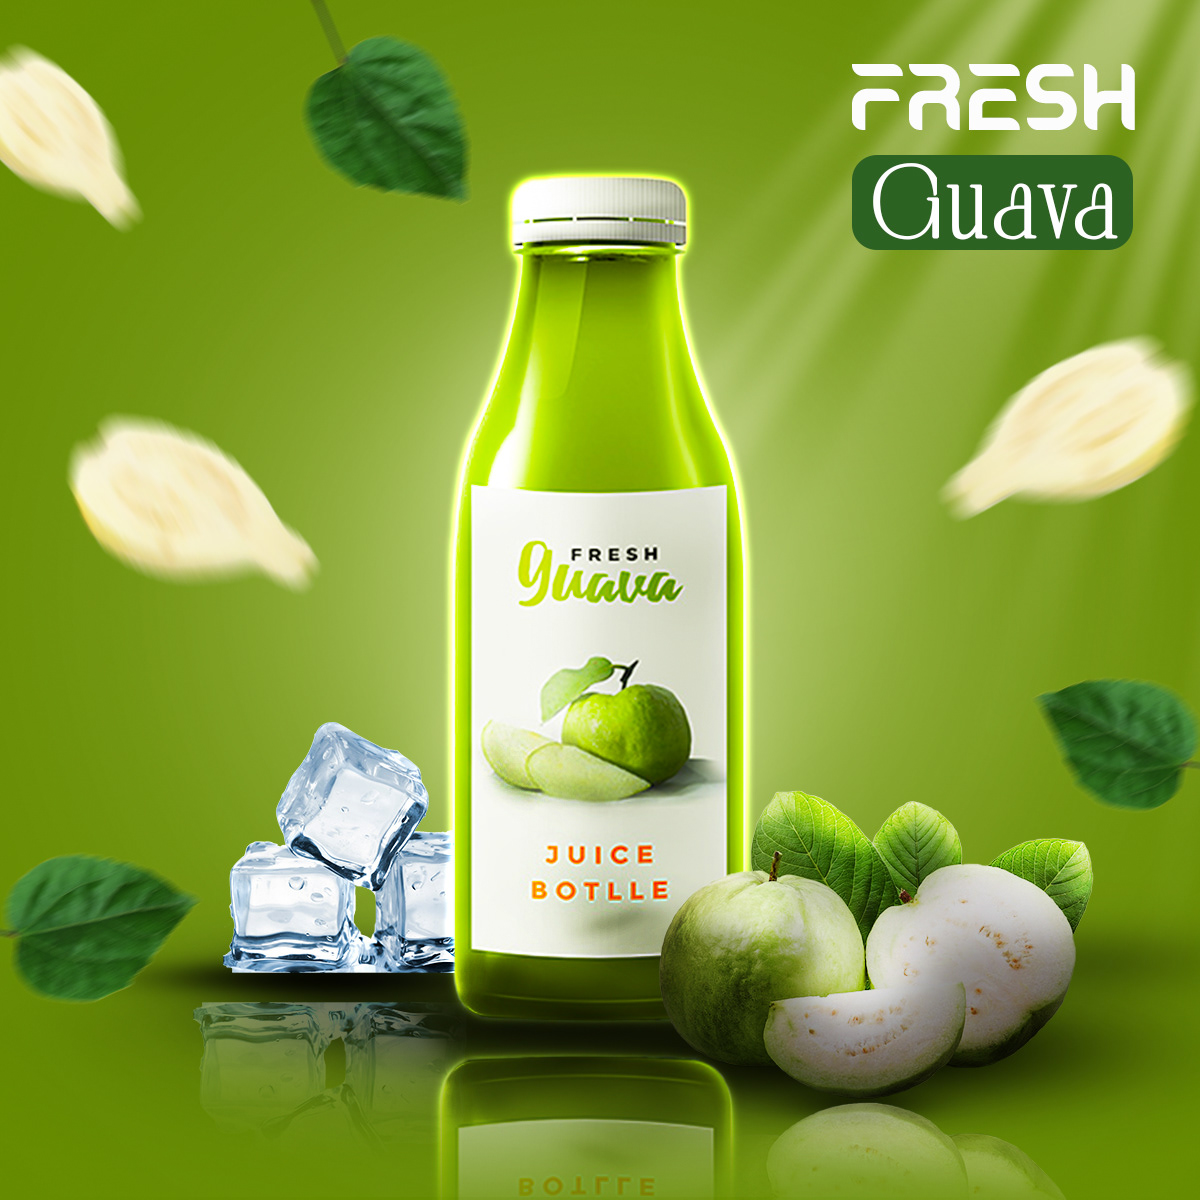 soft drink Advertising  Social media post Socialmedia marketing   Brand Design visual identity brand Guava Juice